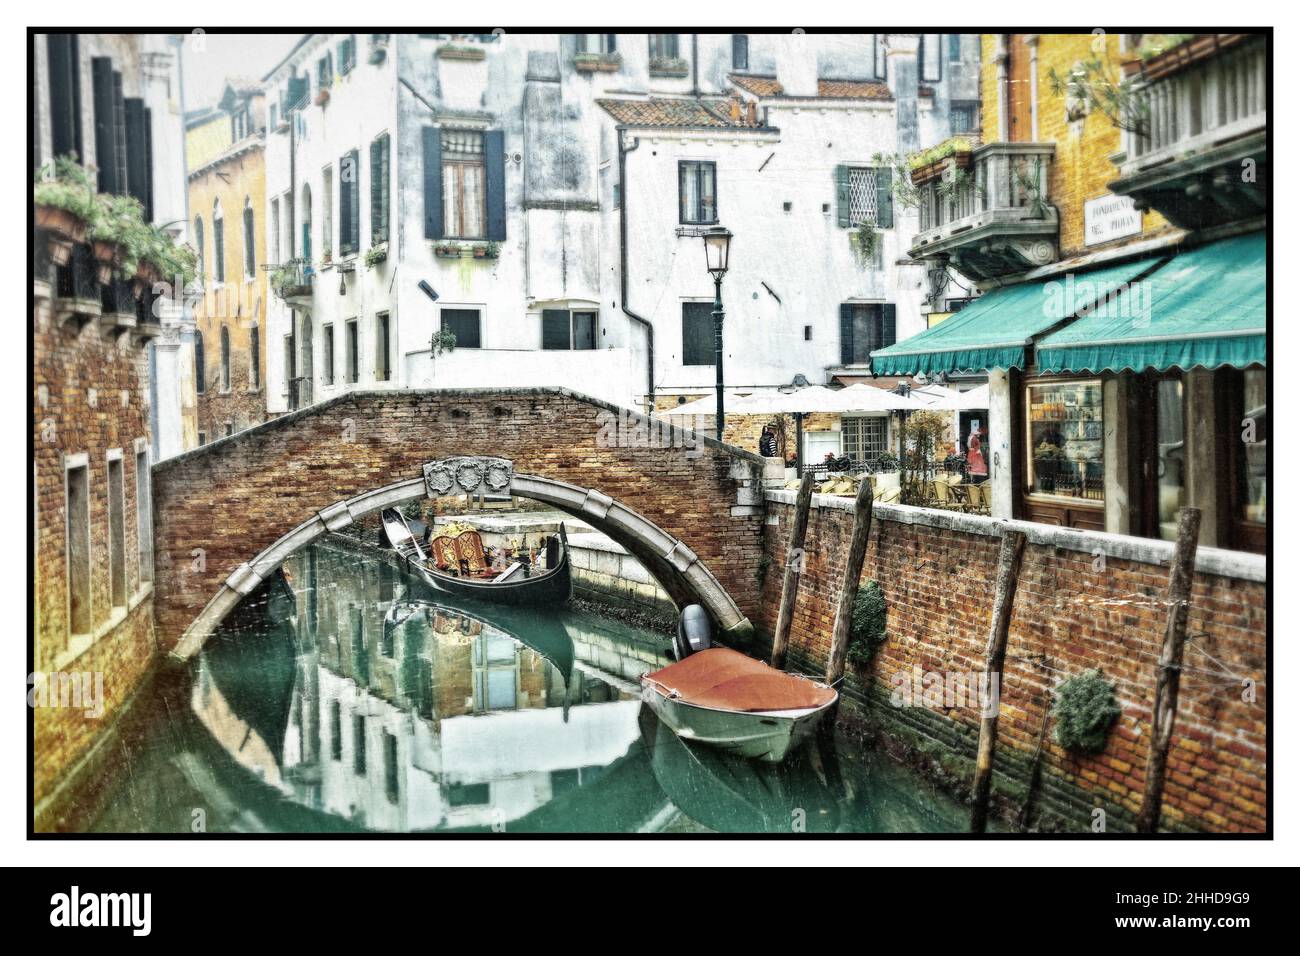 Romantische venezianische Kanäle. Alte enge Gassen von Venedig. Gondeln und Brücken. Retro-Stil. Italien Stockfoto